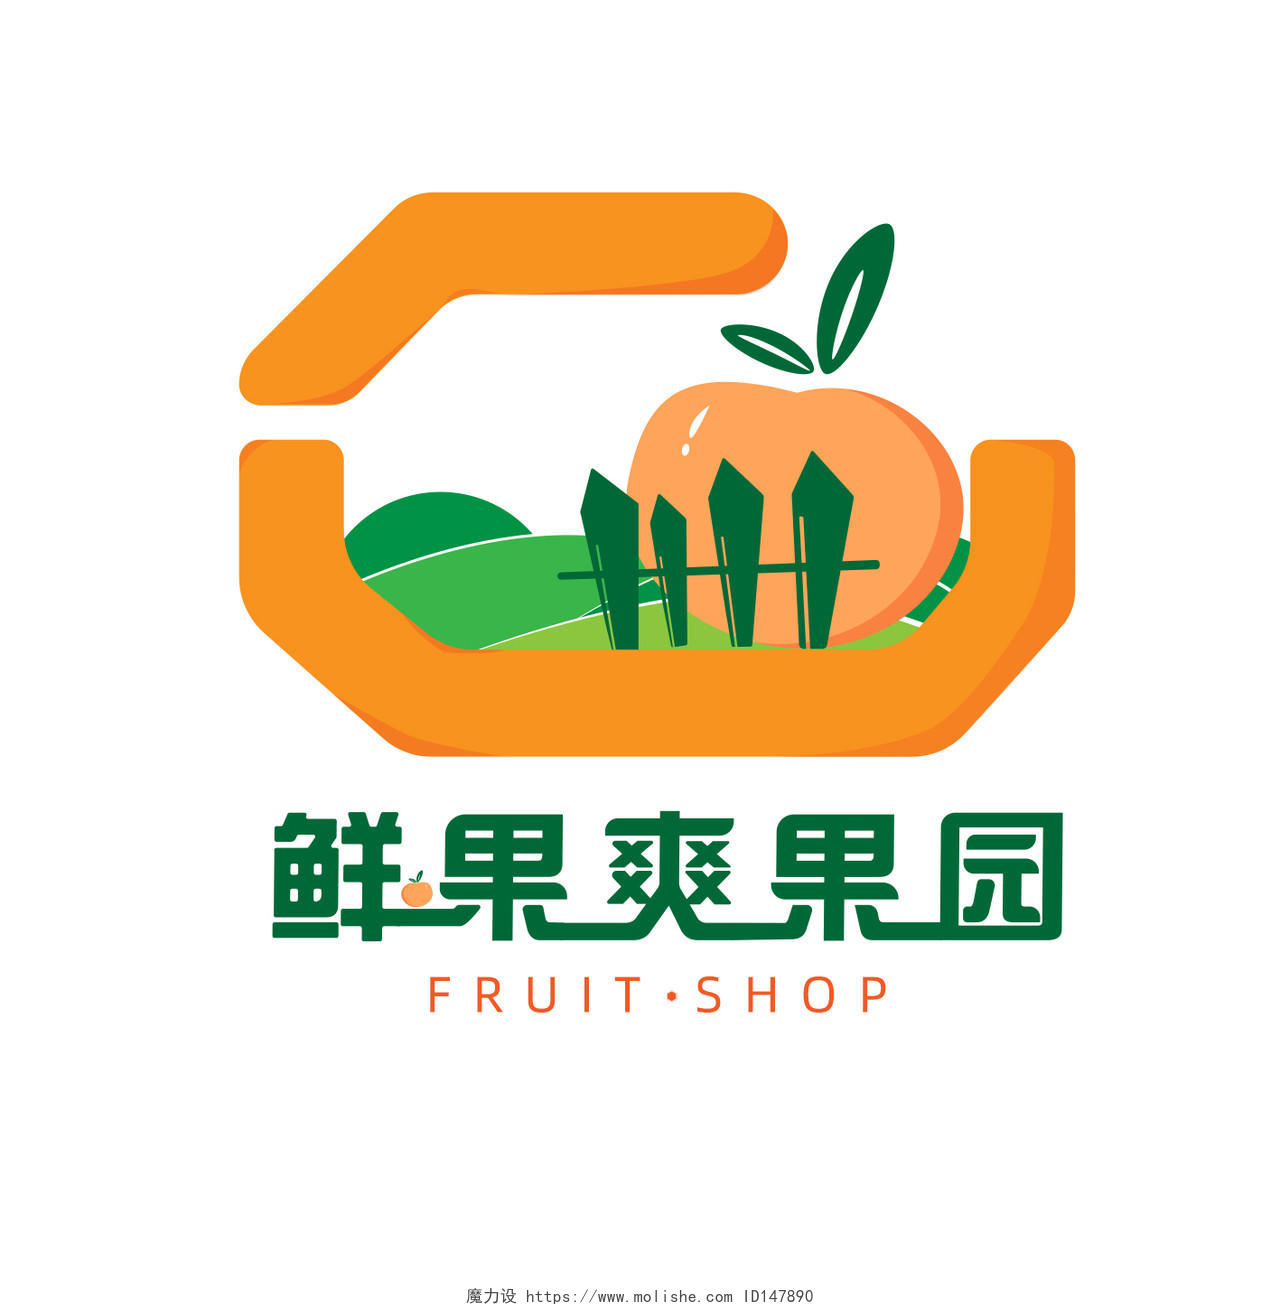 黄绿双色组合现代简约原创水果店logo设计食品logo